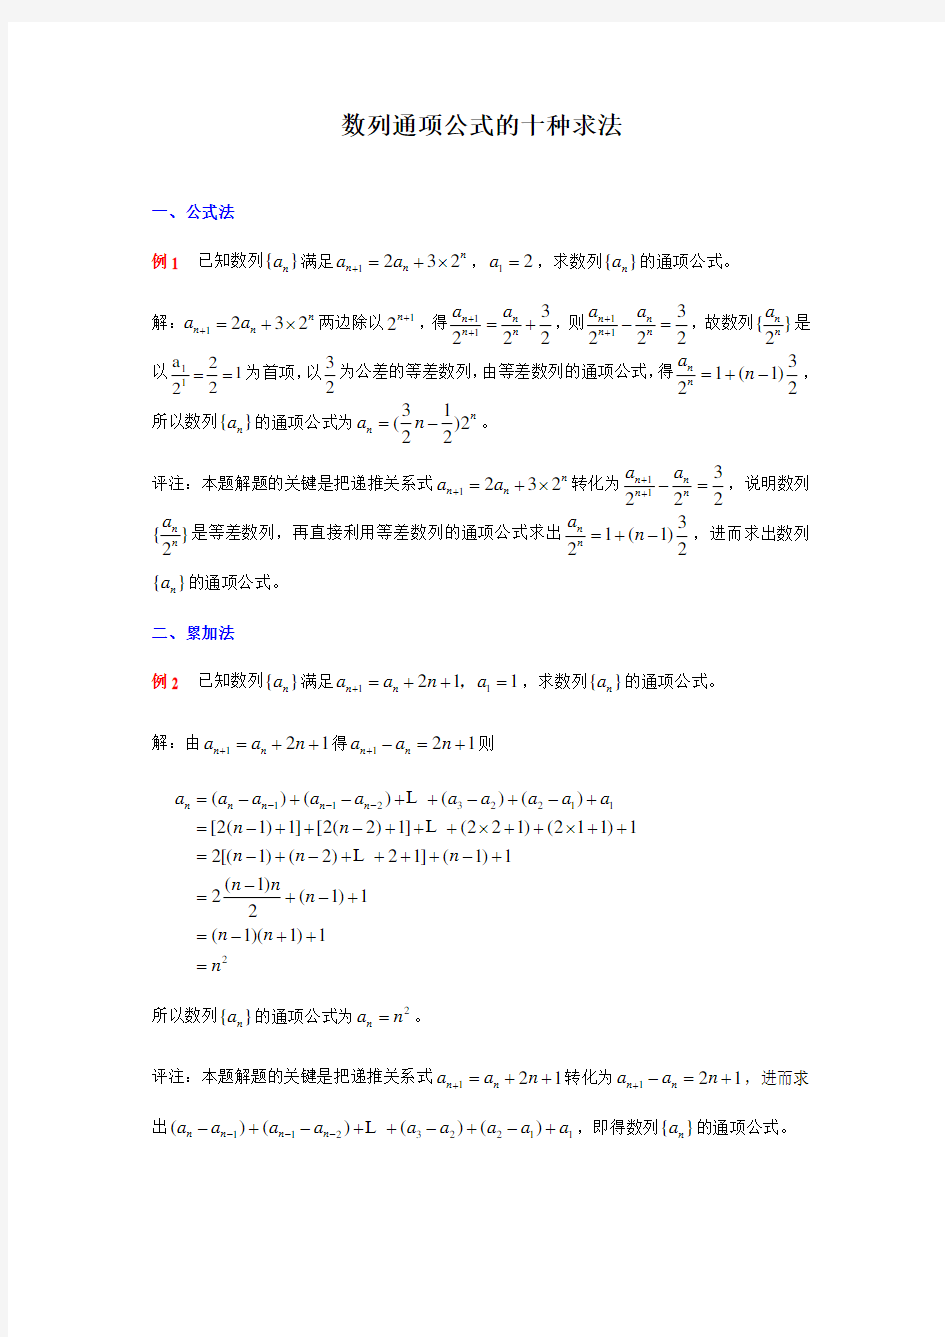 (完整版)数列通项公式的十种求法